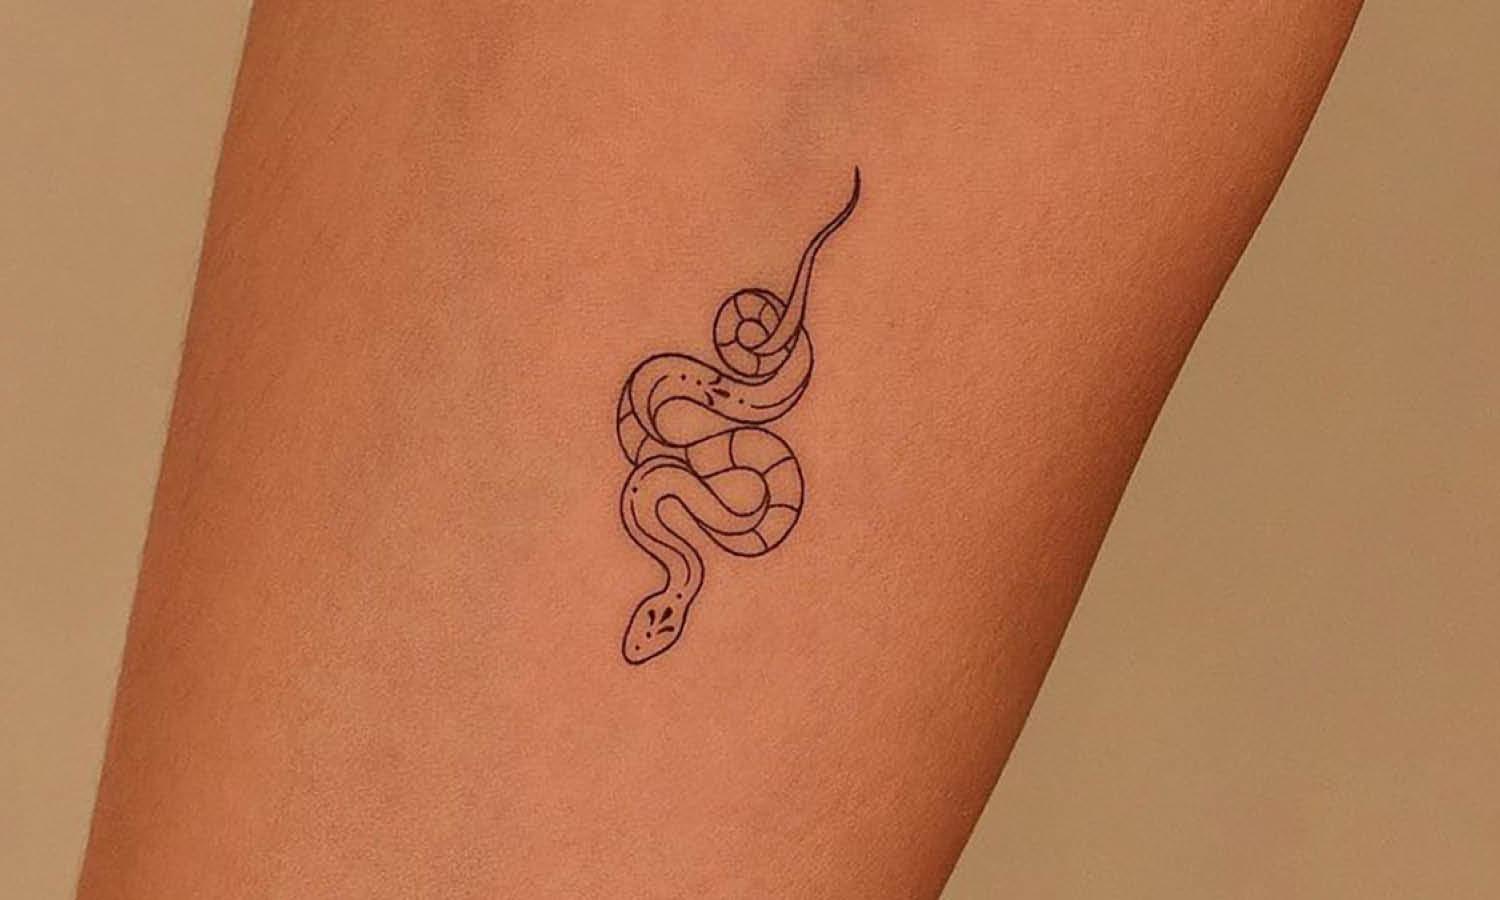 Small tattoo fill gaps | Small tattoos, Simple tattoos, Small tattoo designs